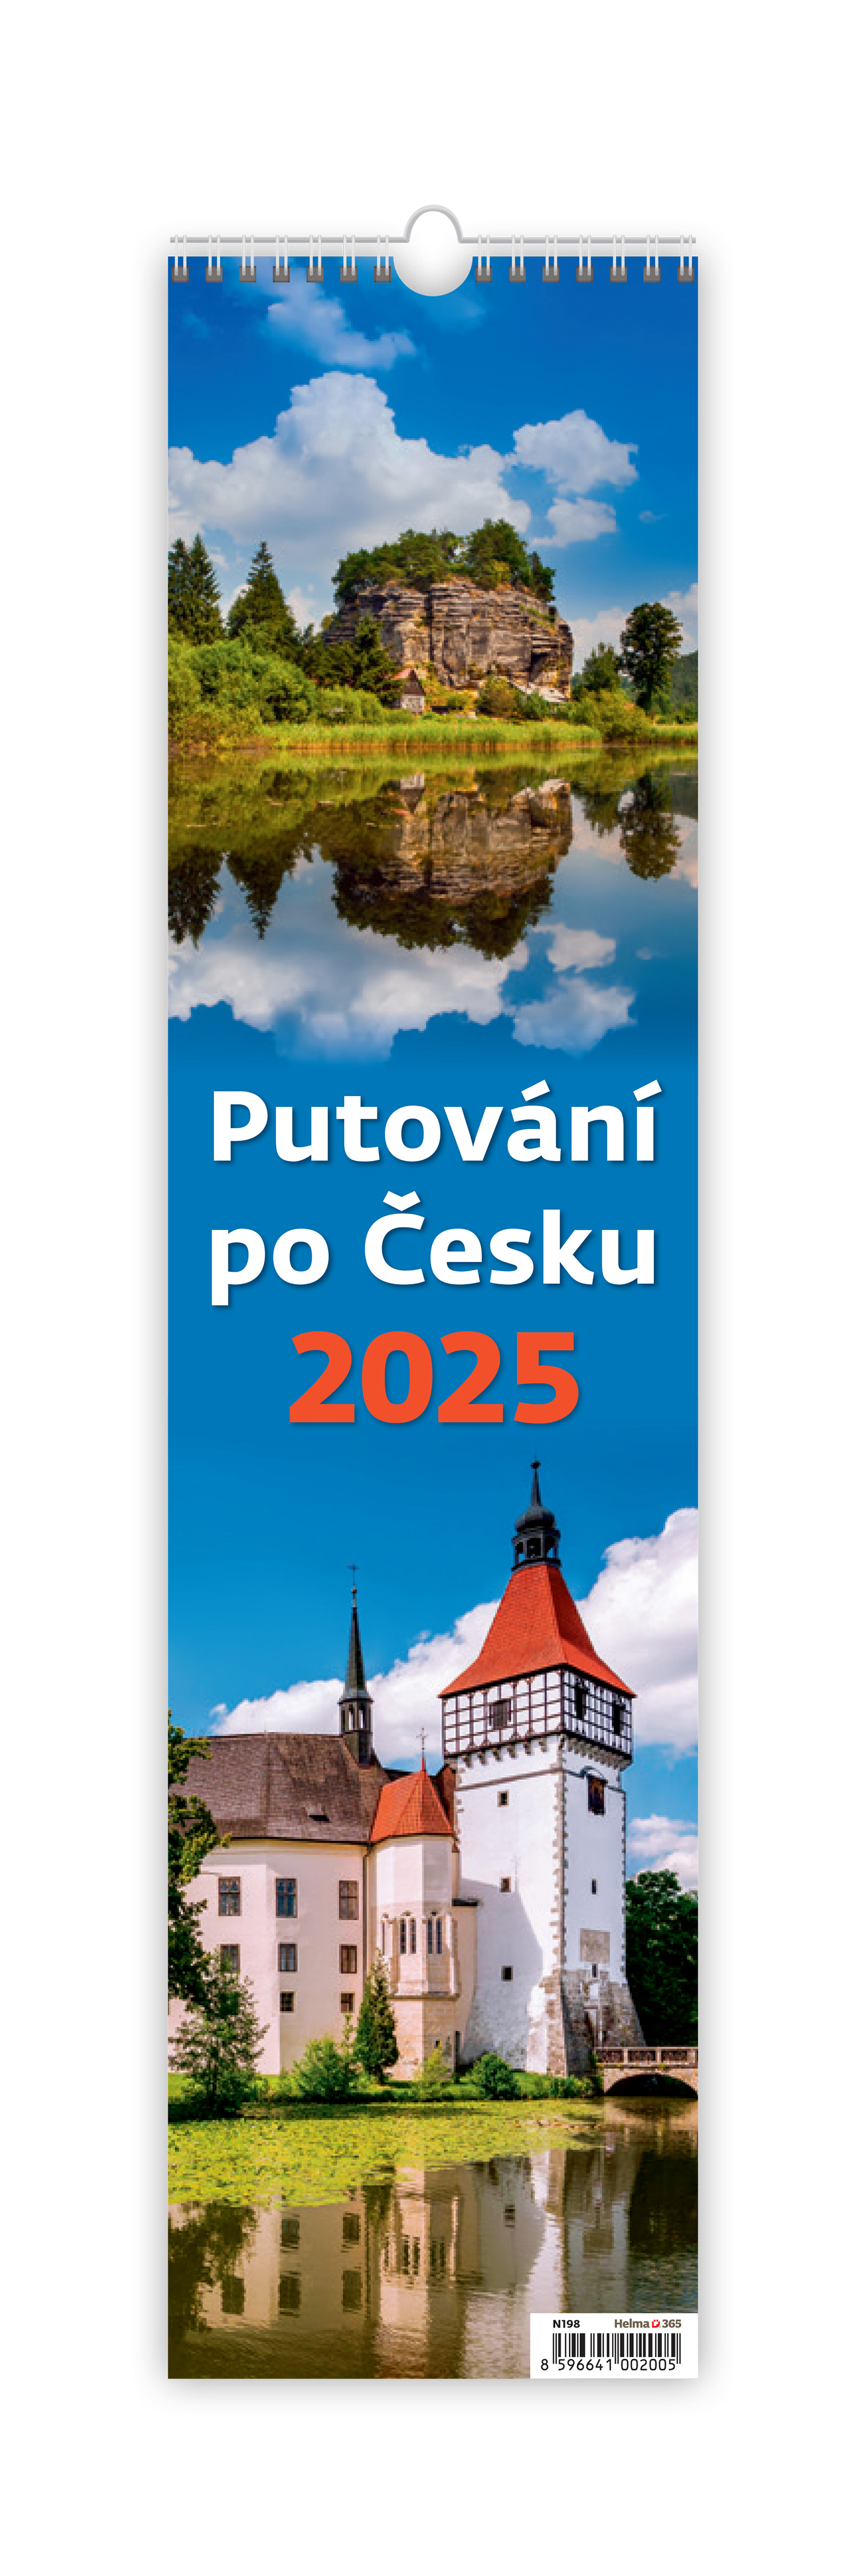 Nástěnný kalendář Putování po Česku 2025 - vázanka